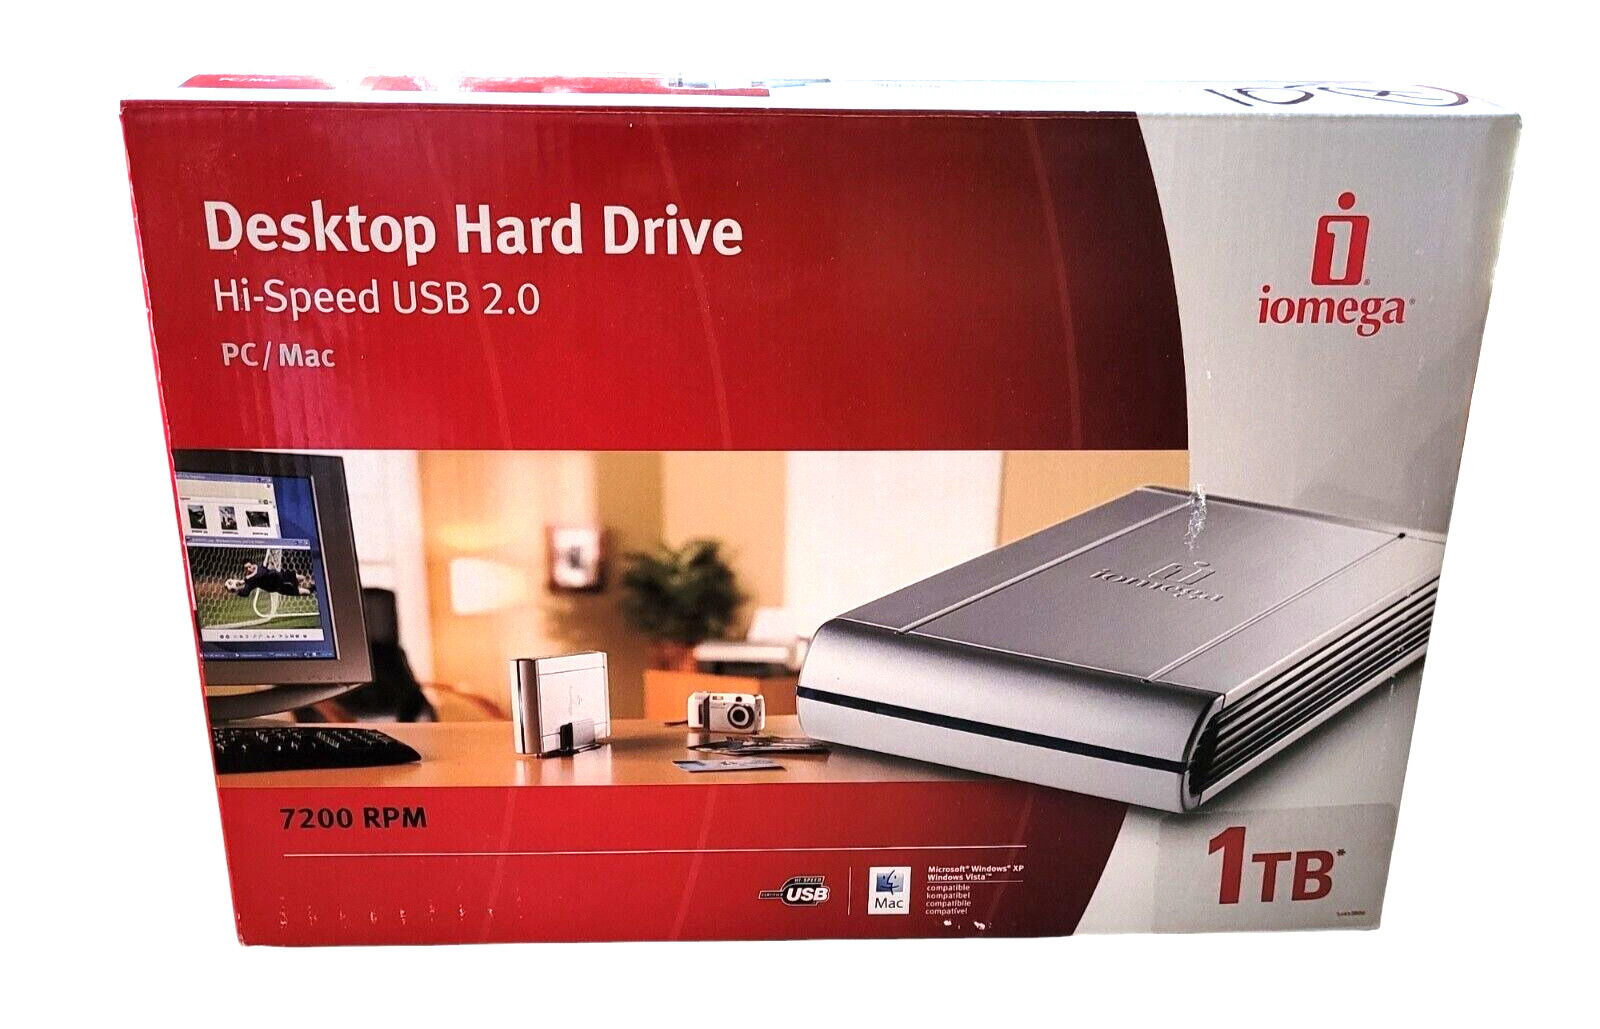 iOmega HDDE Desktop Classic 1TB Hard Drive USB 2.0 7200 RPM PC XP/Vista MAC